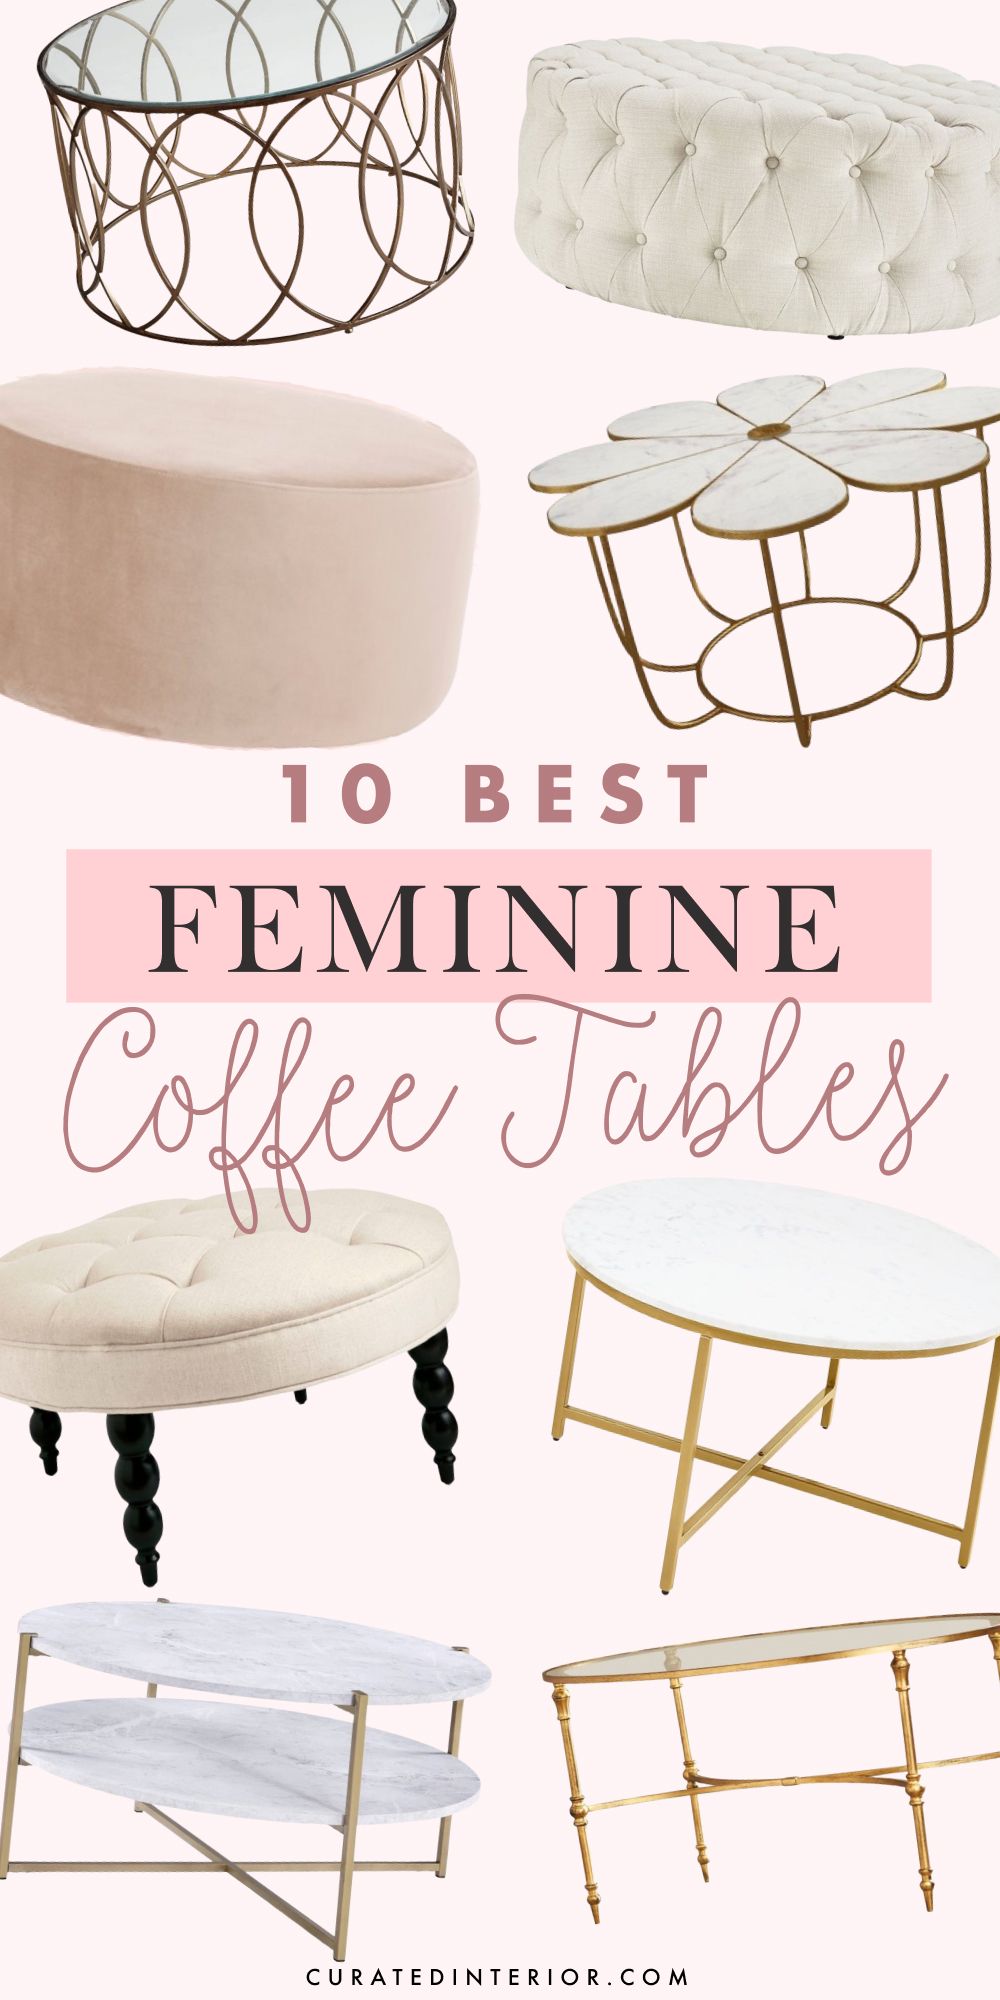 10 Best Feminine Coffee Tables for an Elegant Living Room Design